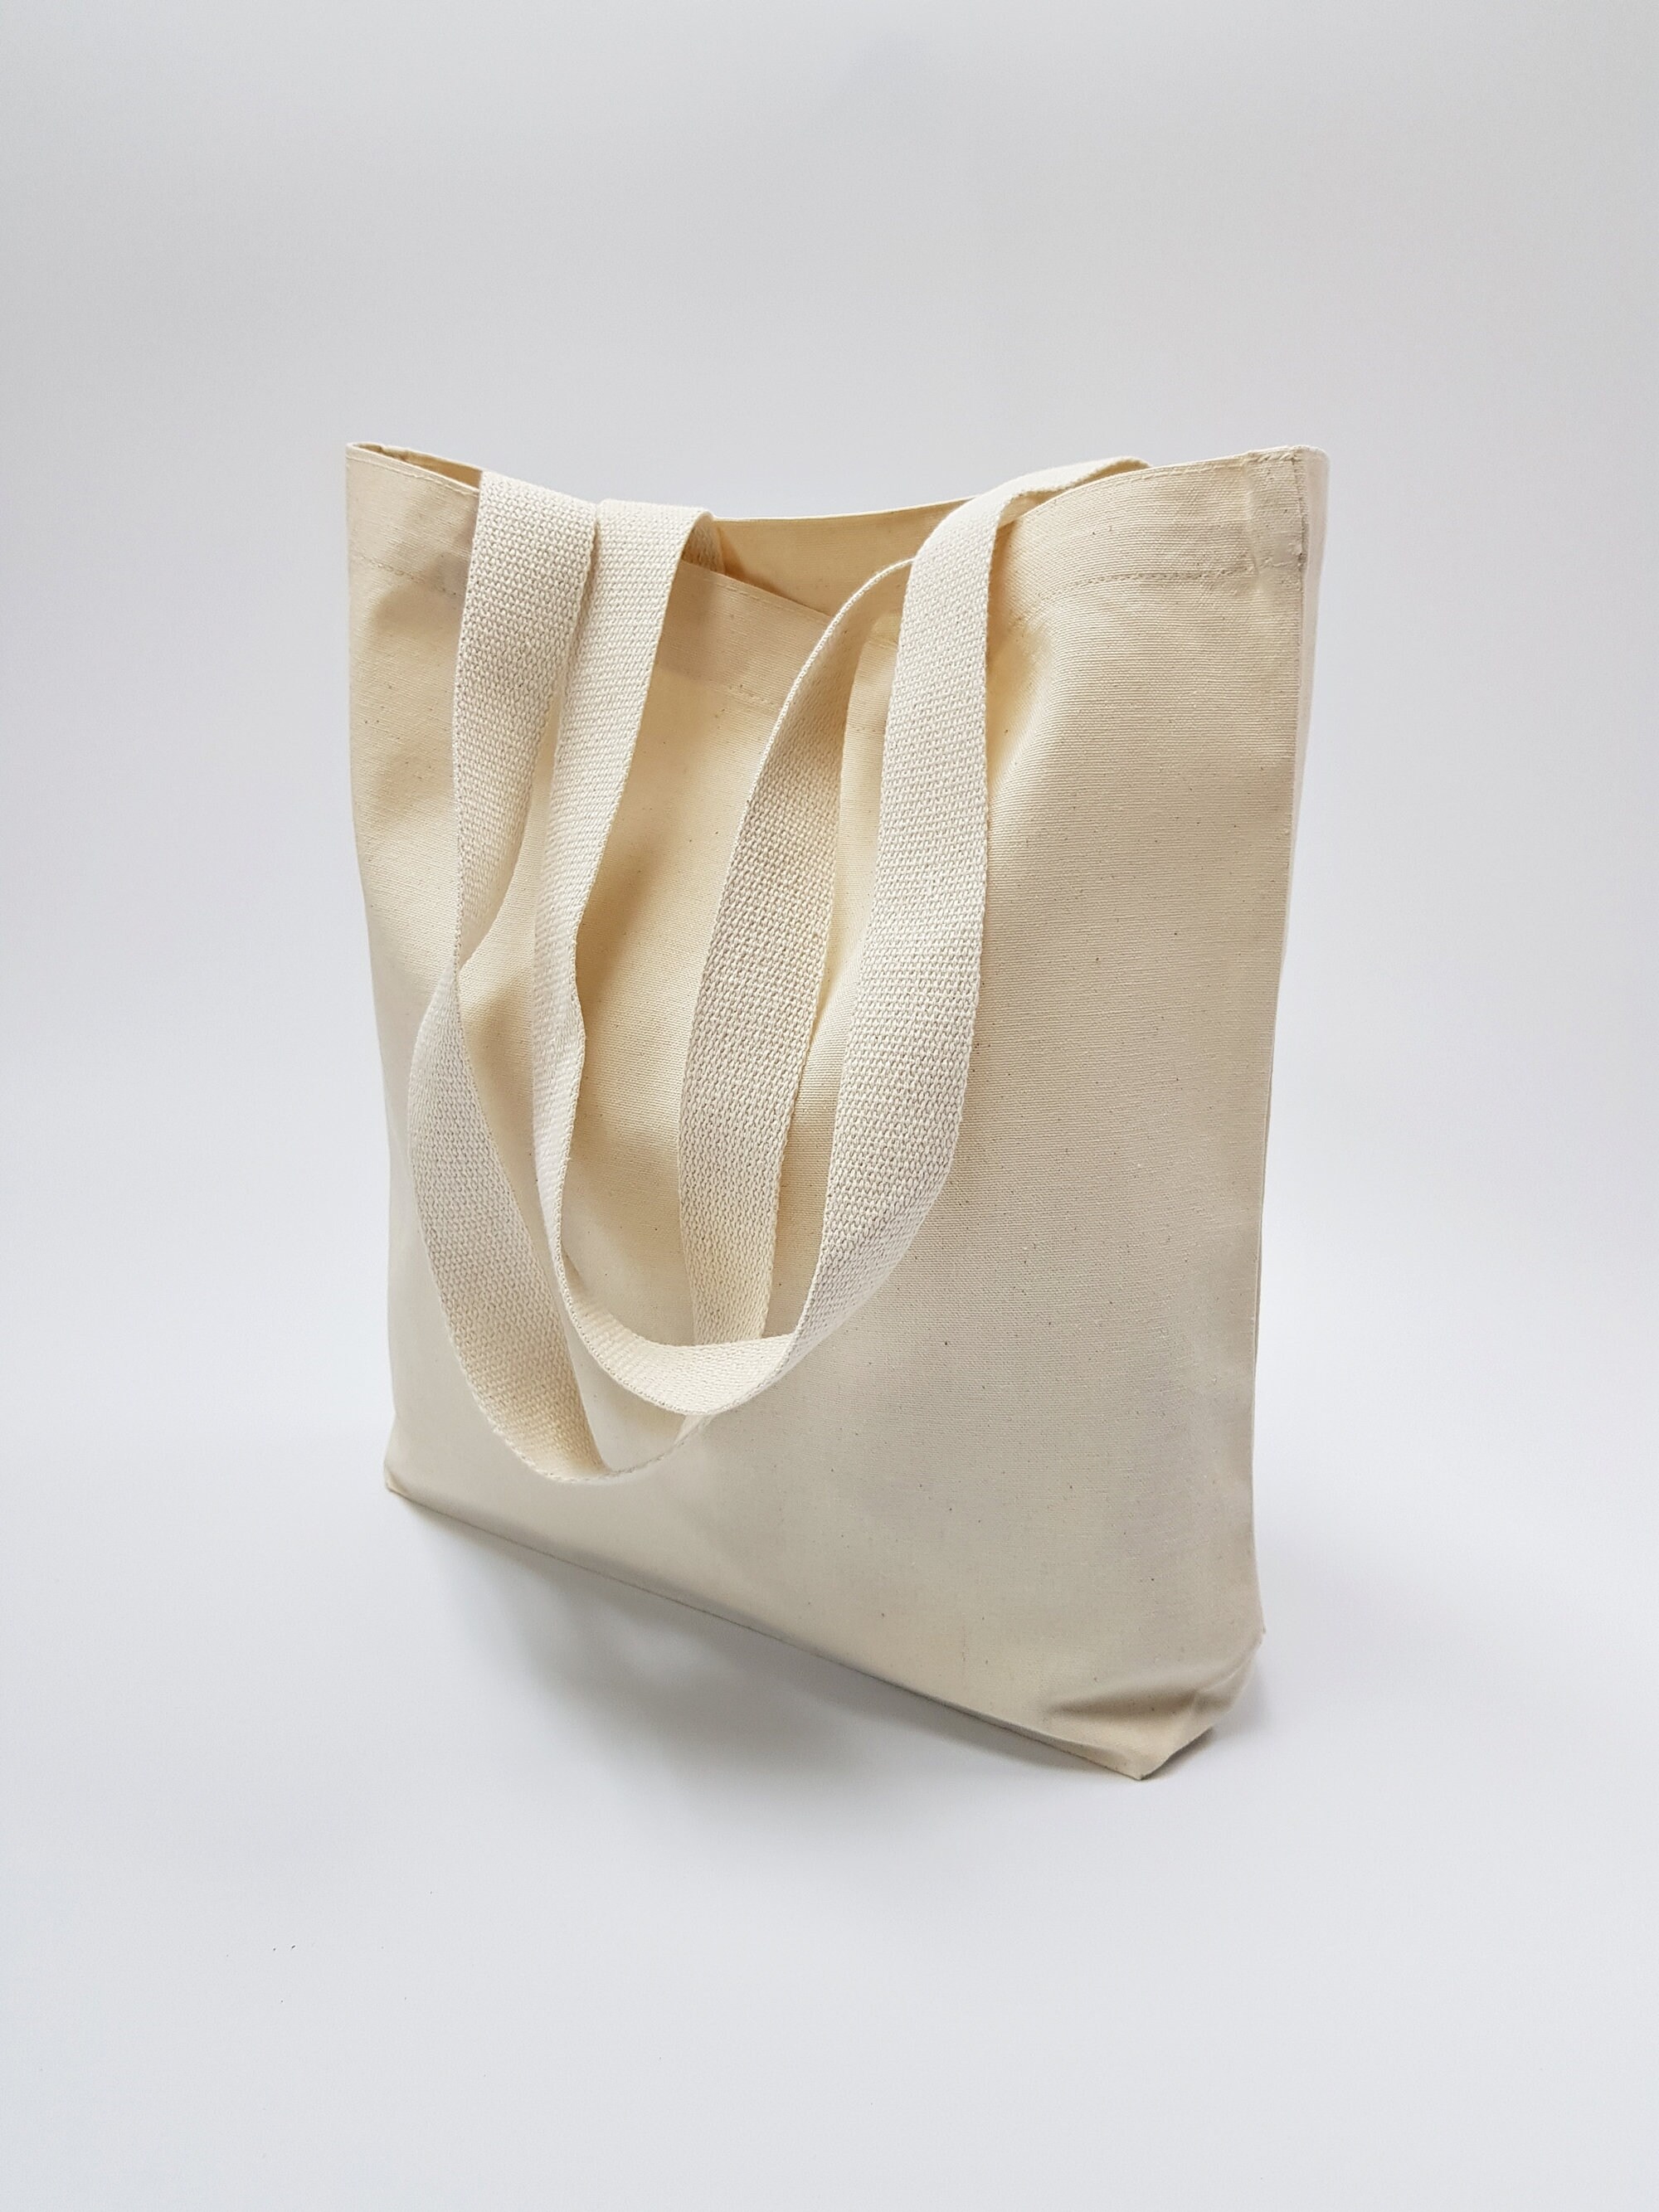 14 15.5 Plain Unbleached Cotton Canvas Tote Bag, Market Bag